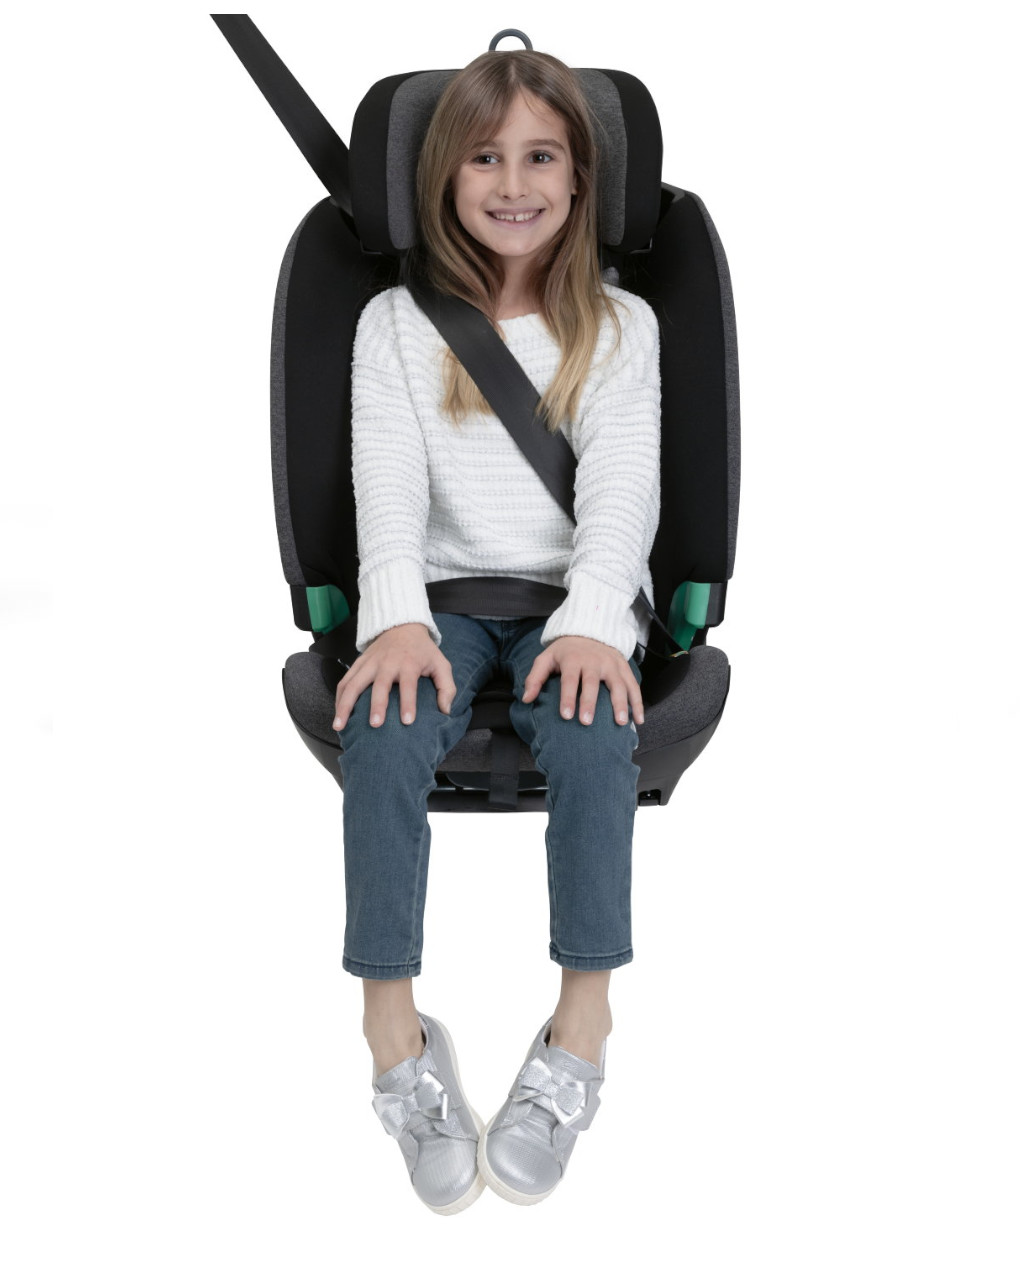 Cadeira auto bi-seat i-size preto (61-150 cm) - chicco - Chicco